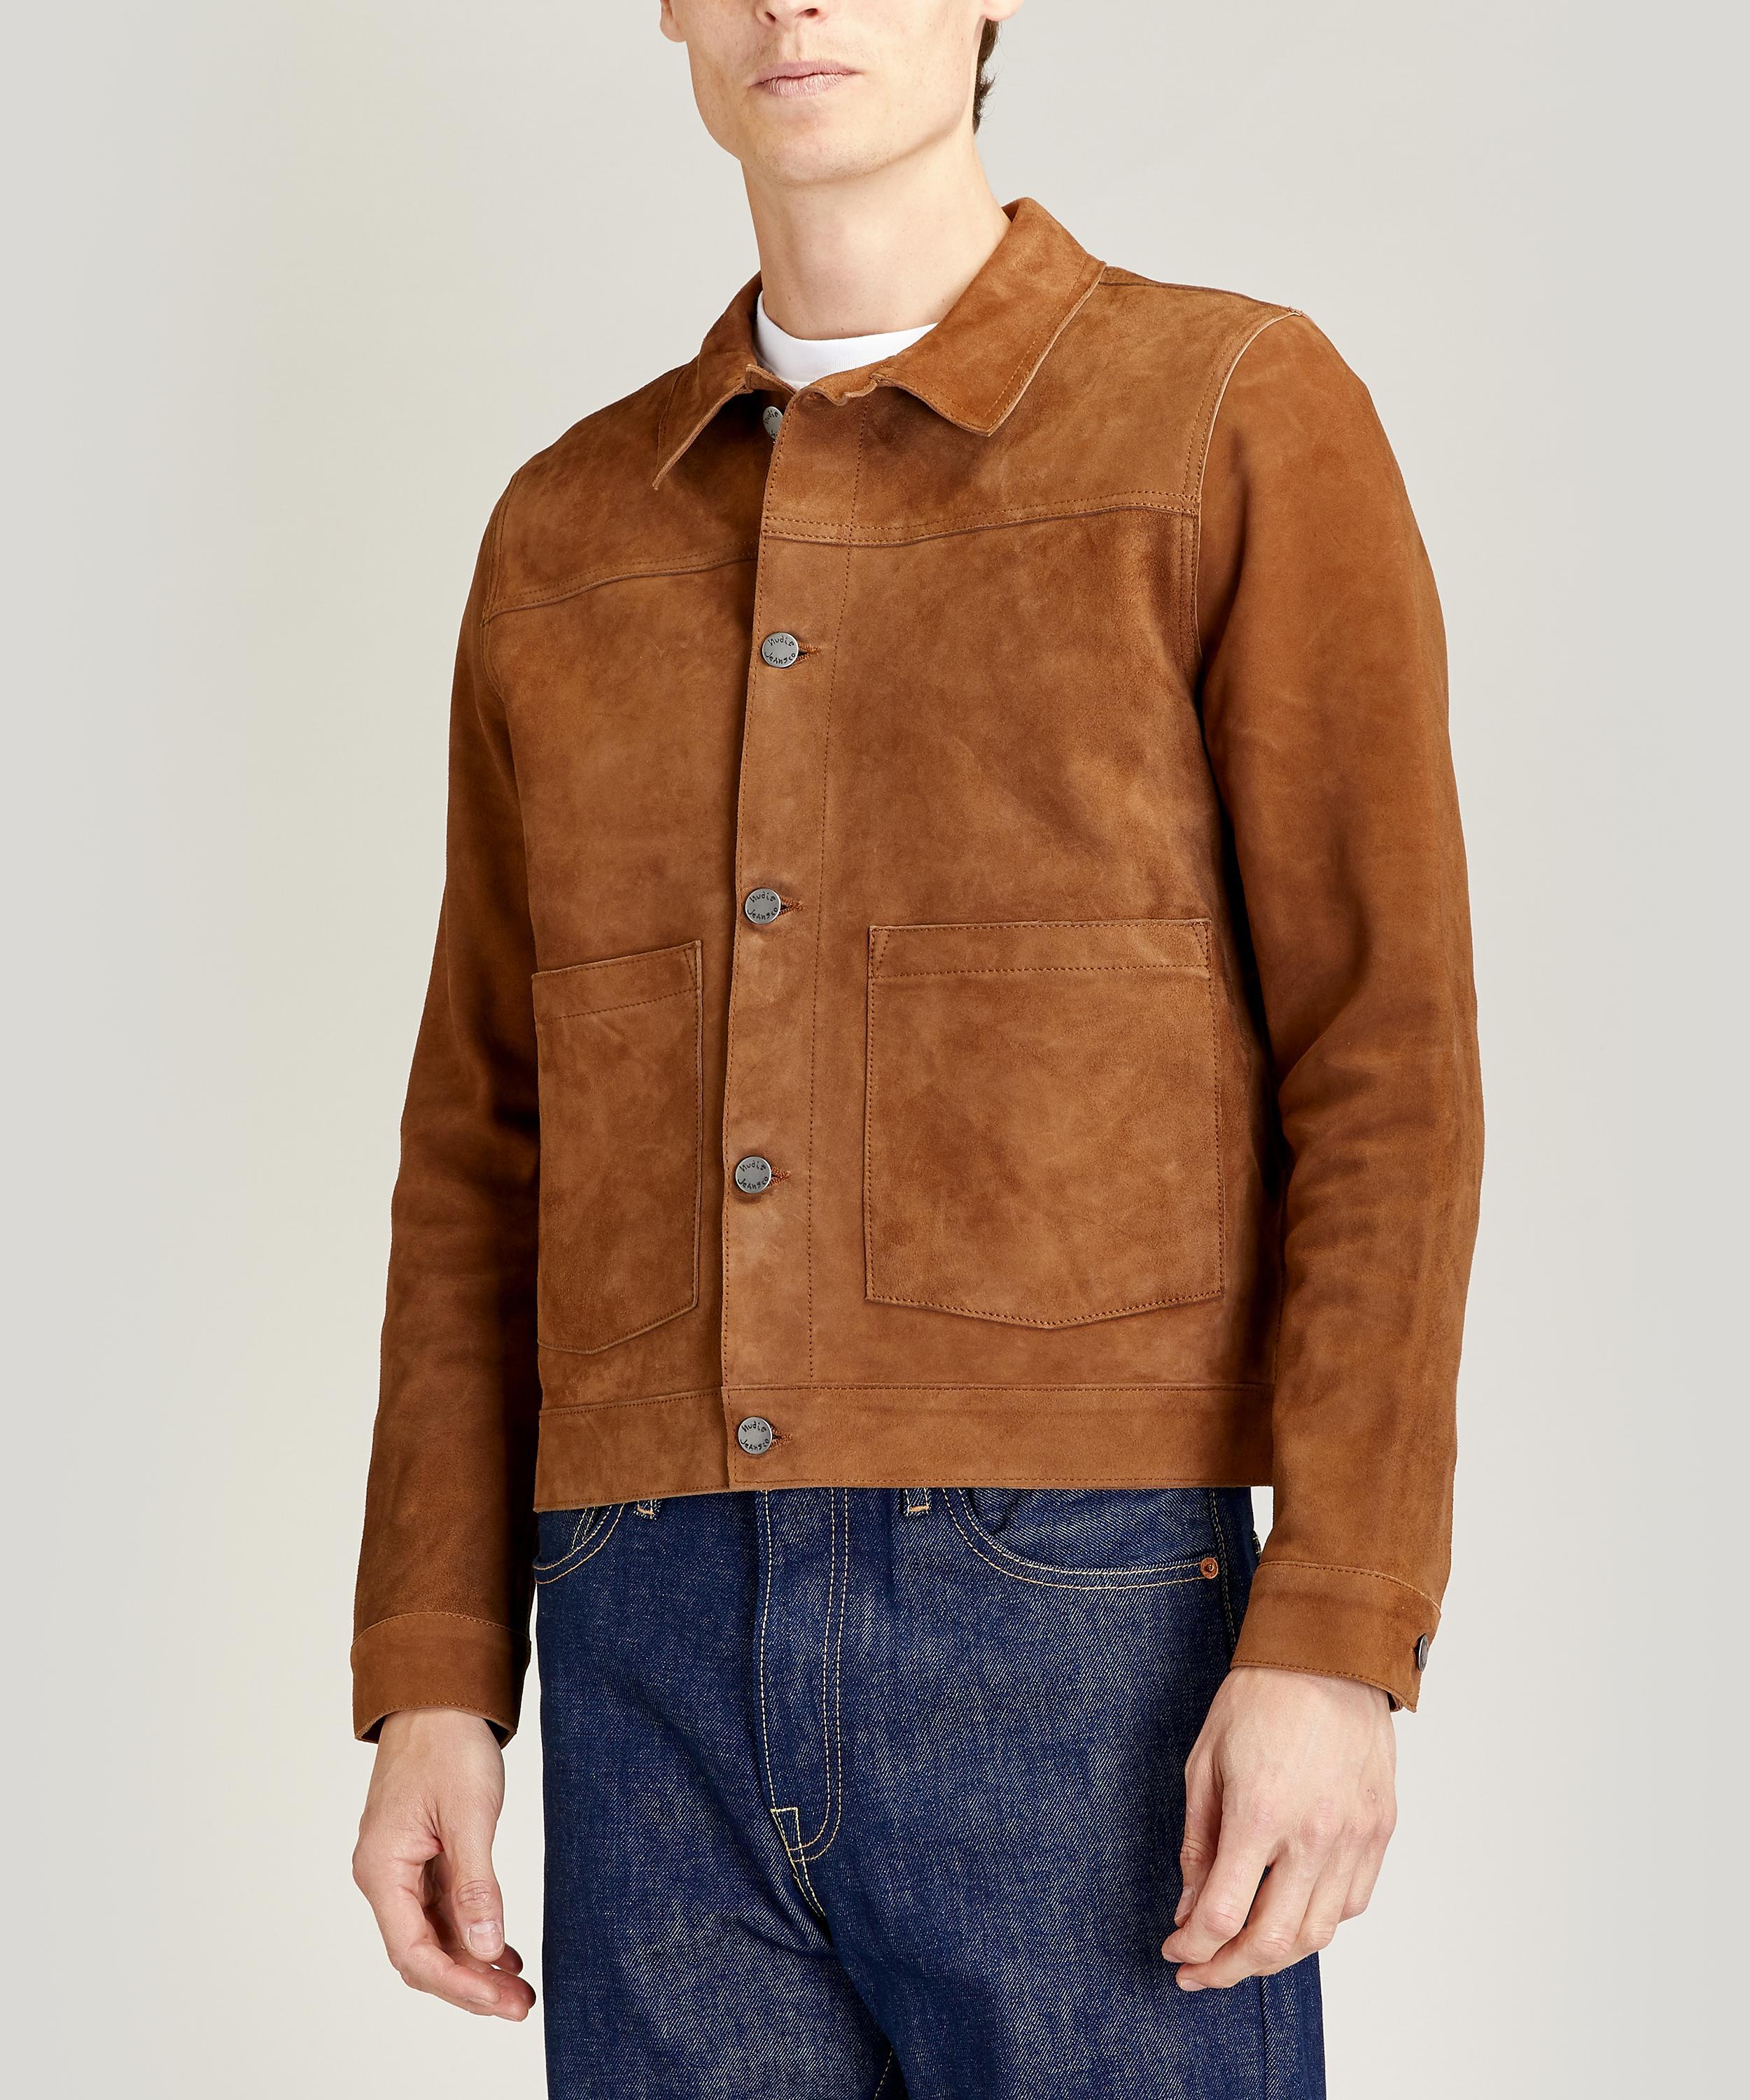 Nudie Jeans Dante Nubuck Leather Jacket in Brown for Men - Lyst